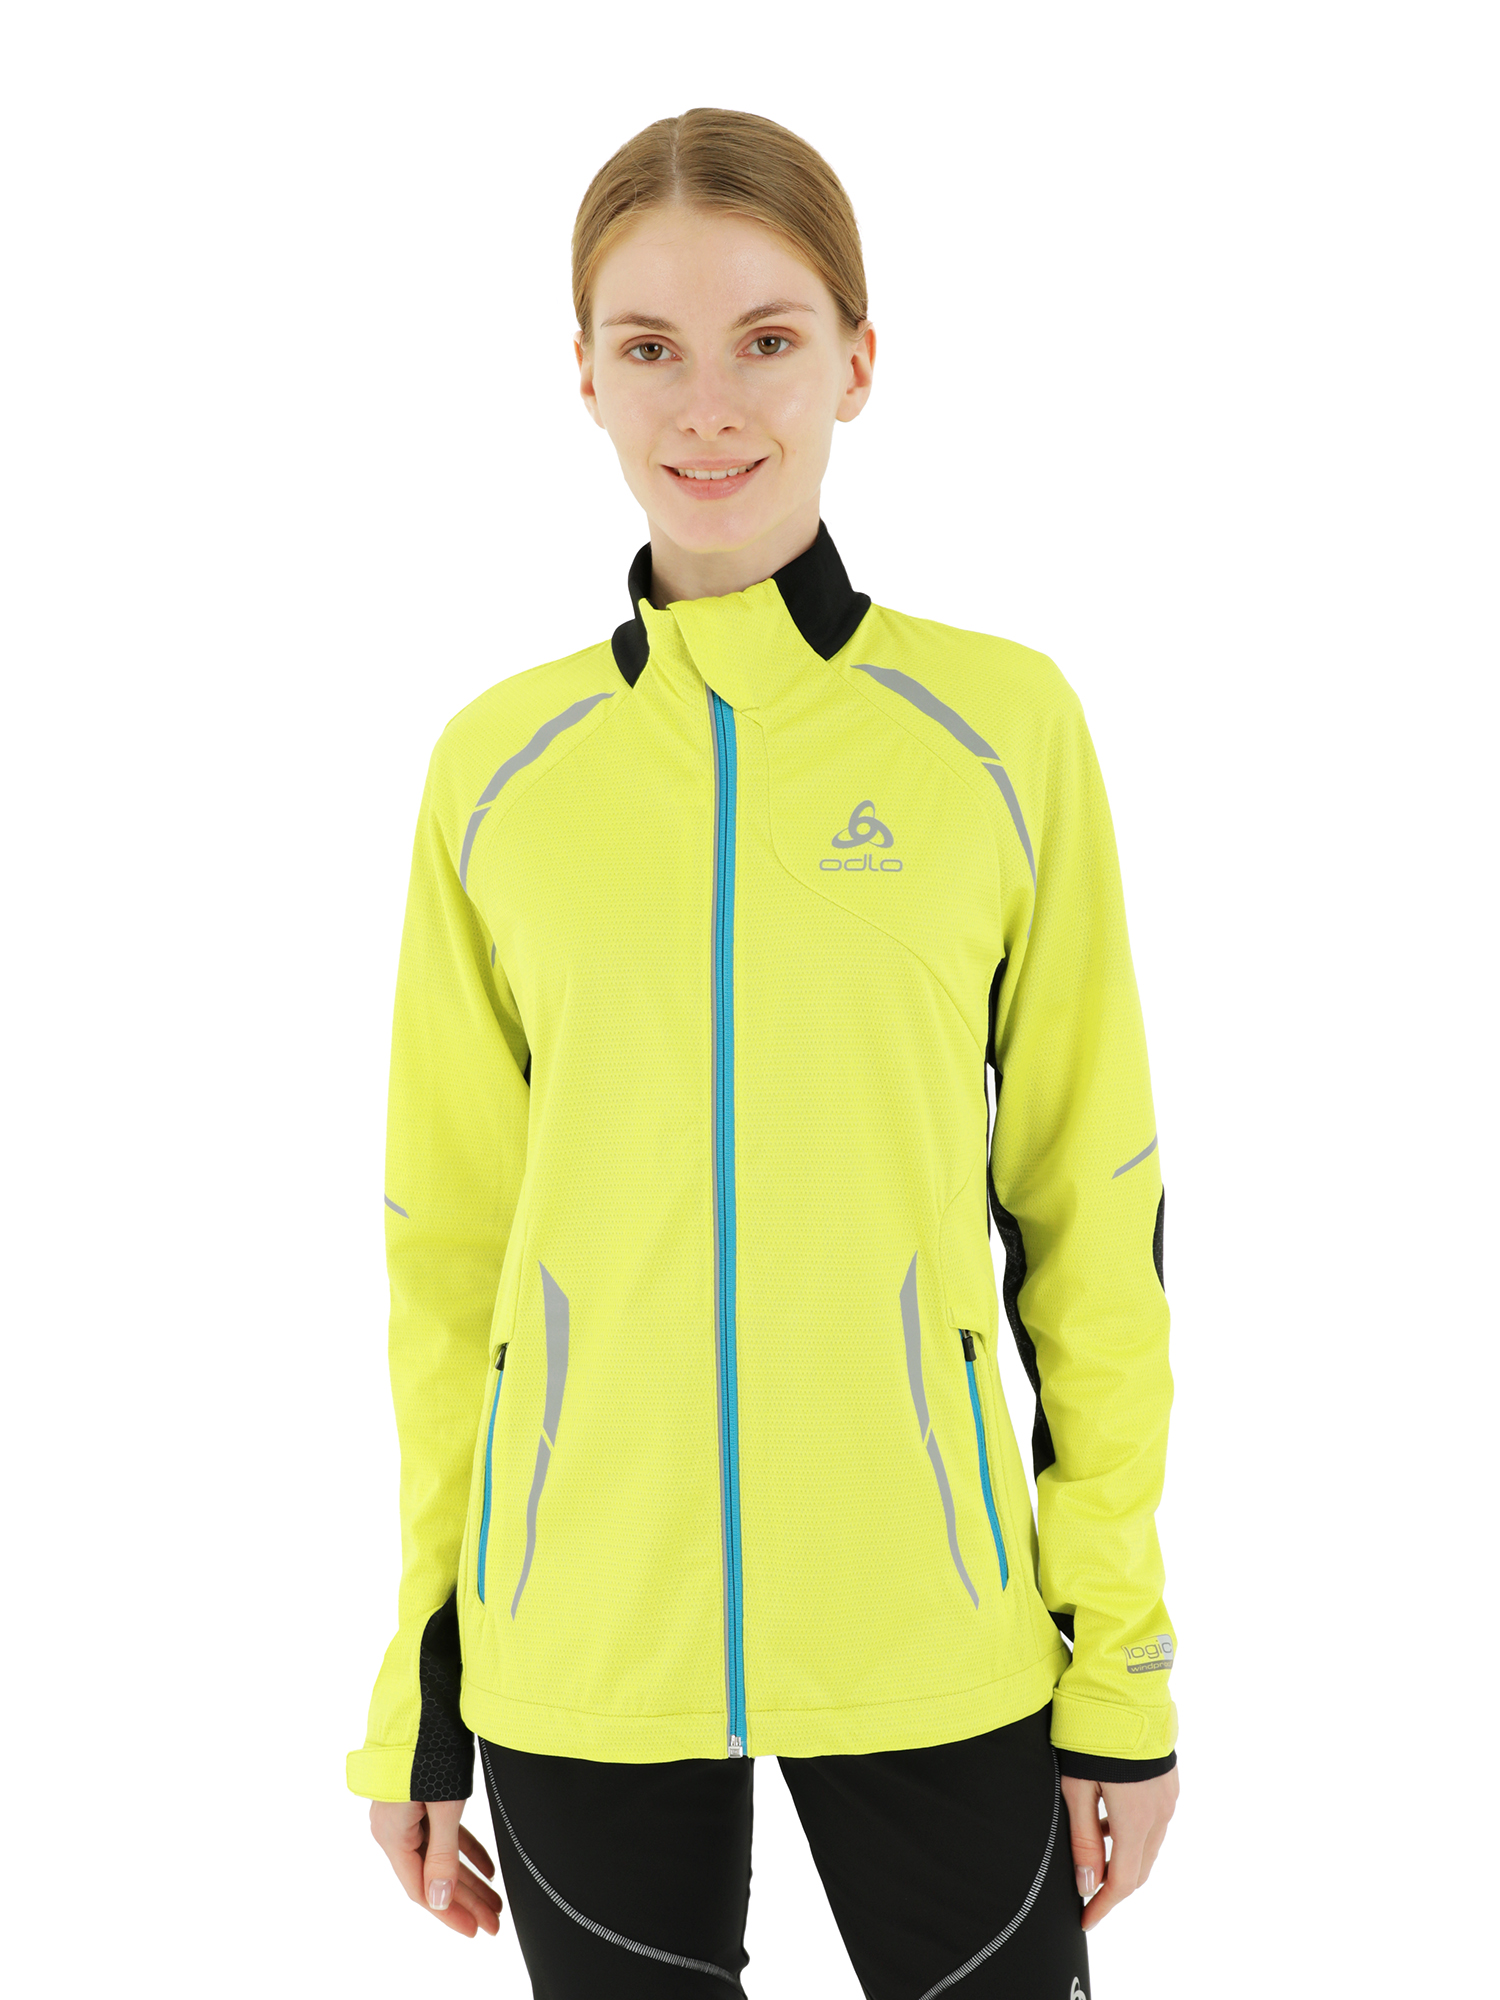 Спортивная куртка женская Odlo Jacket Frequency желтая 2XL